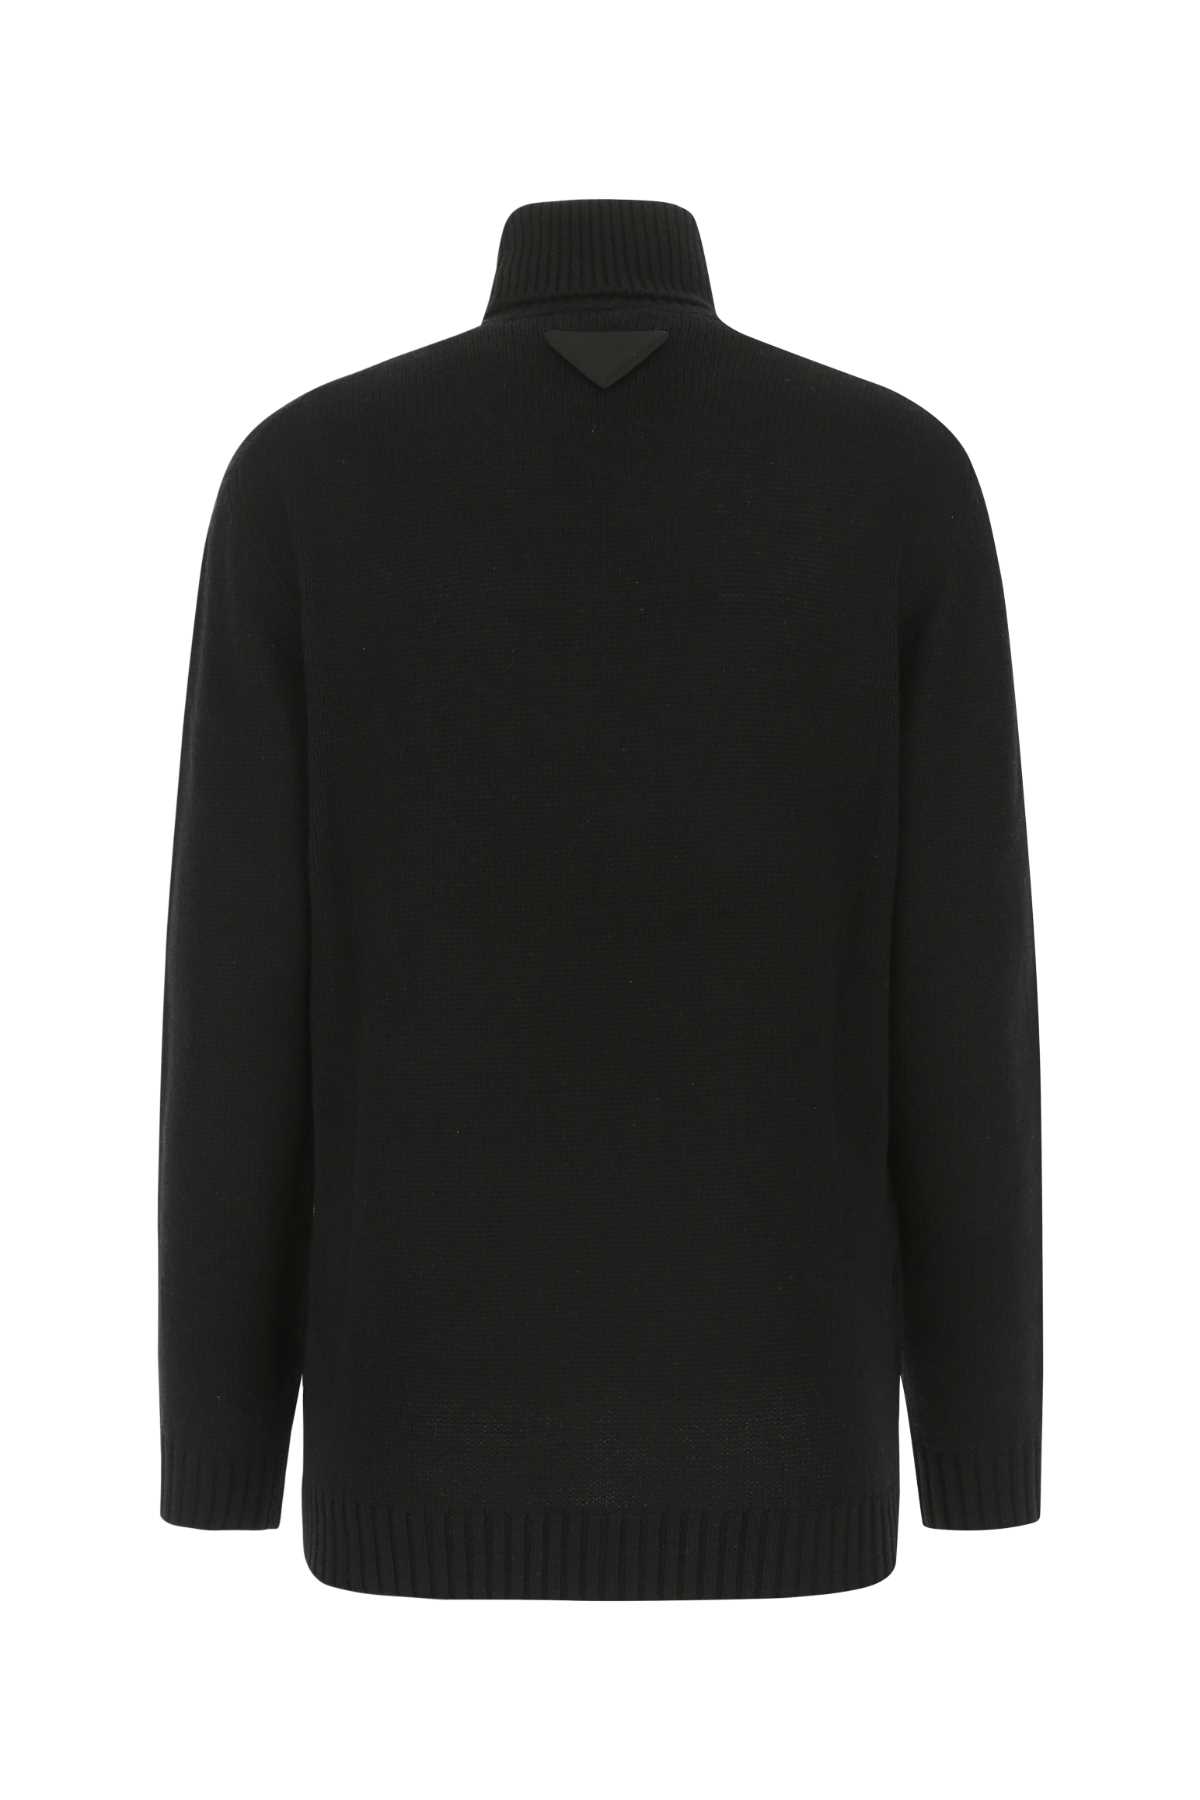 Shop Prada Black Cashmere Sweater In F0002